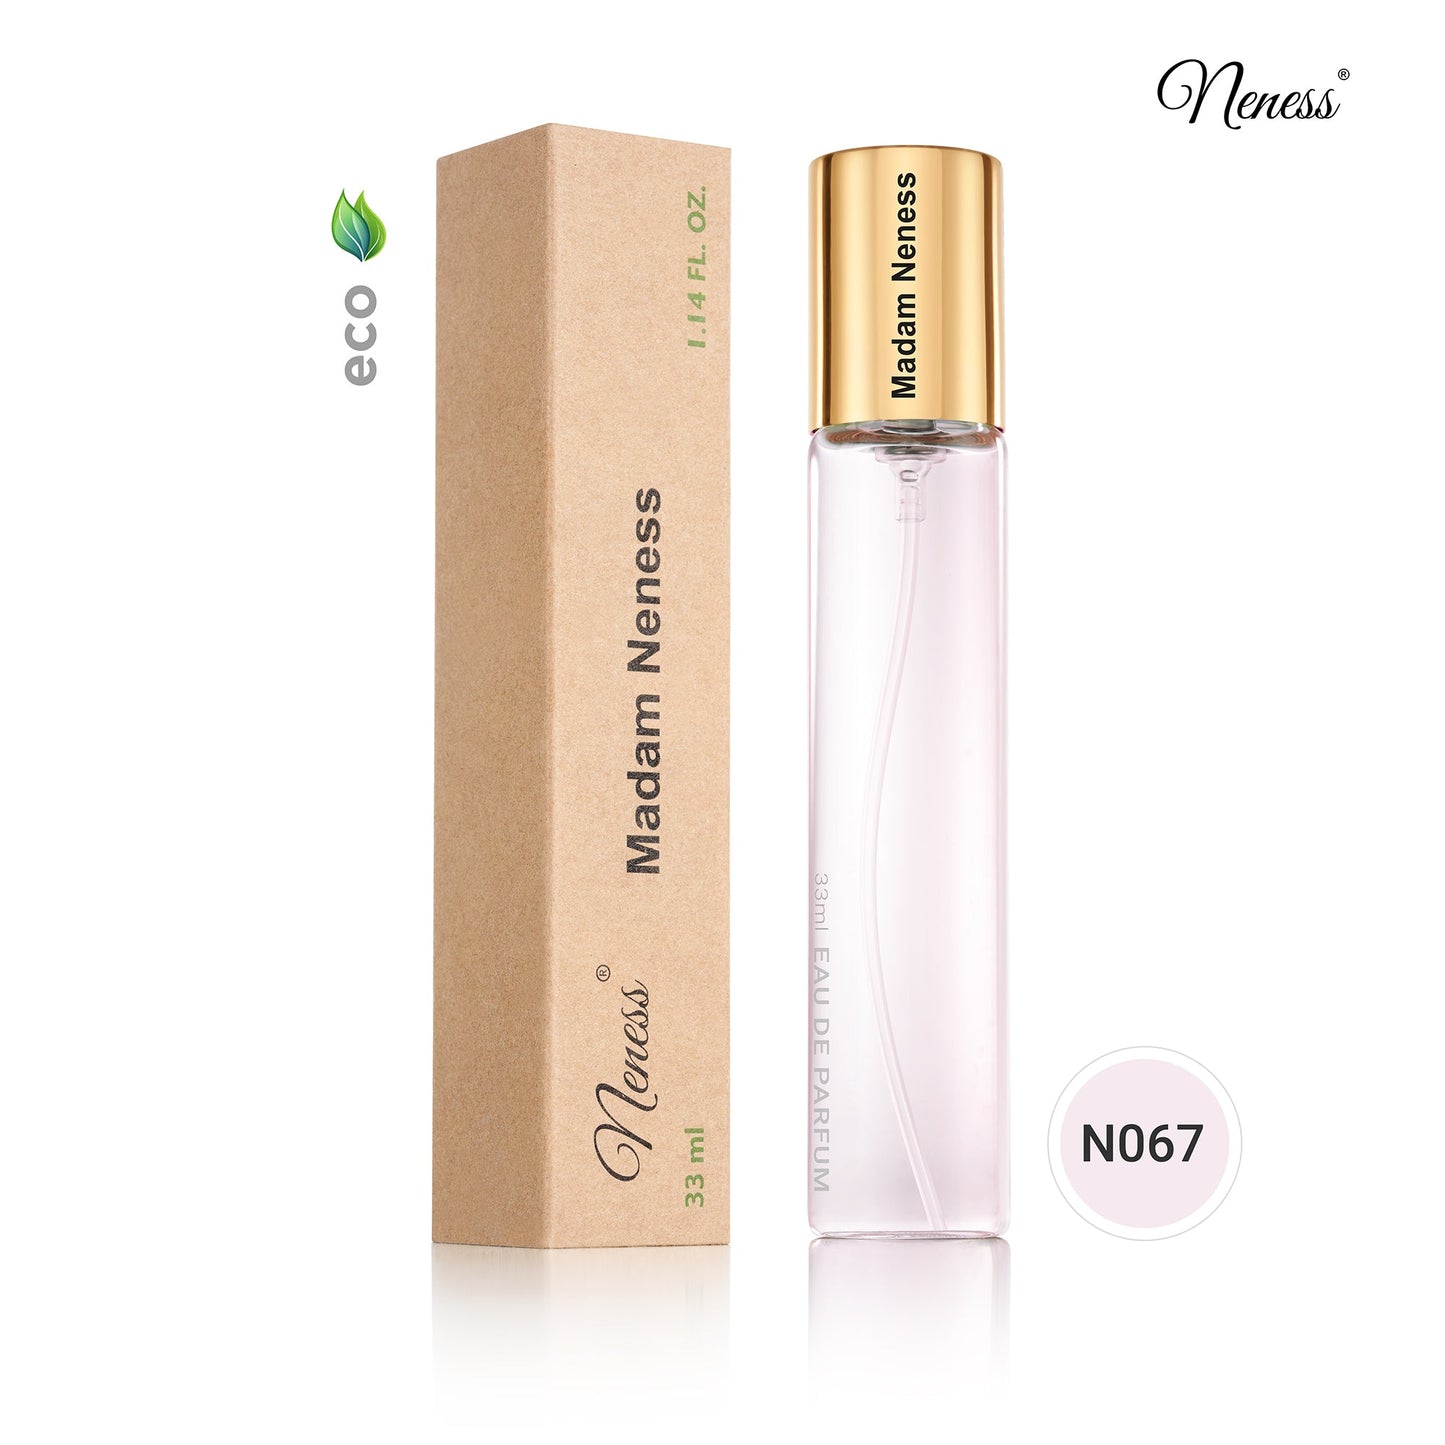 N067. Madam Neness - 33 ml - Parfum Pour Femme